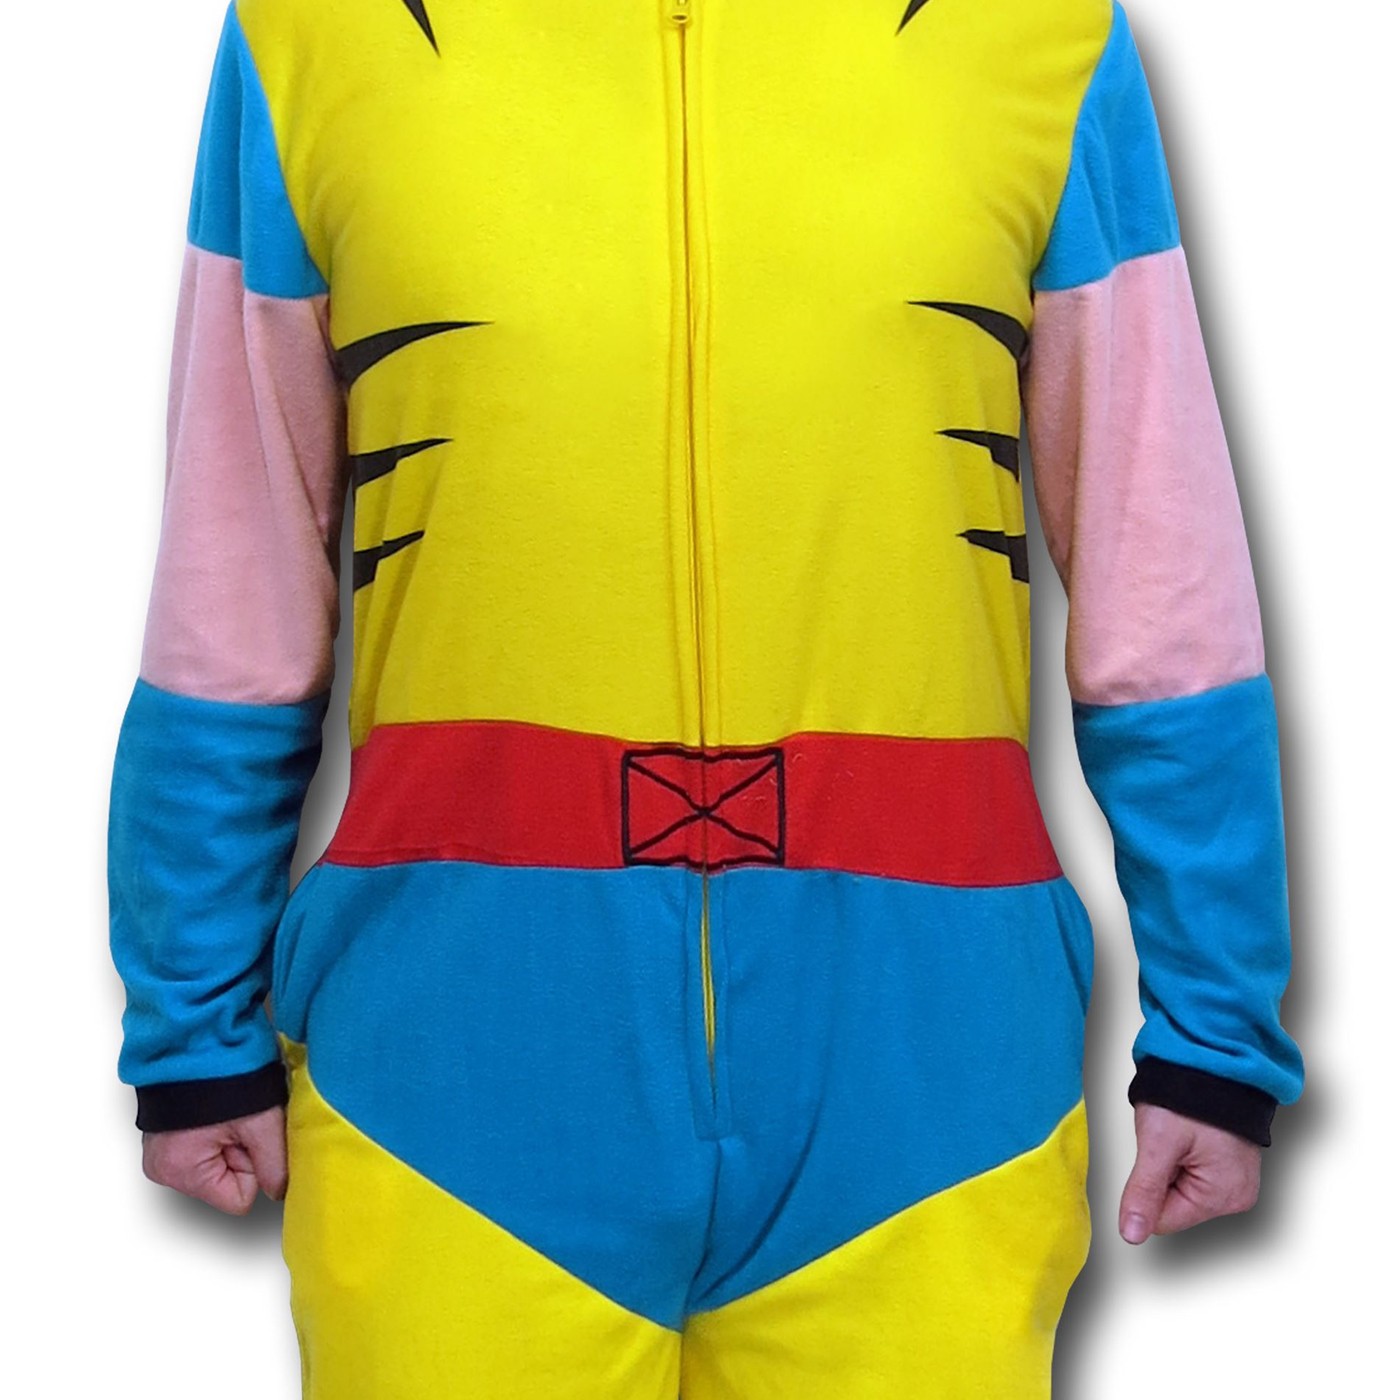 Wolverine Retro Costume Union Suit Pajamas